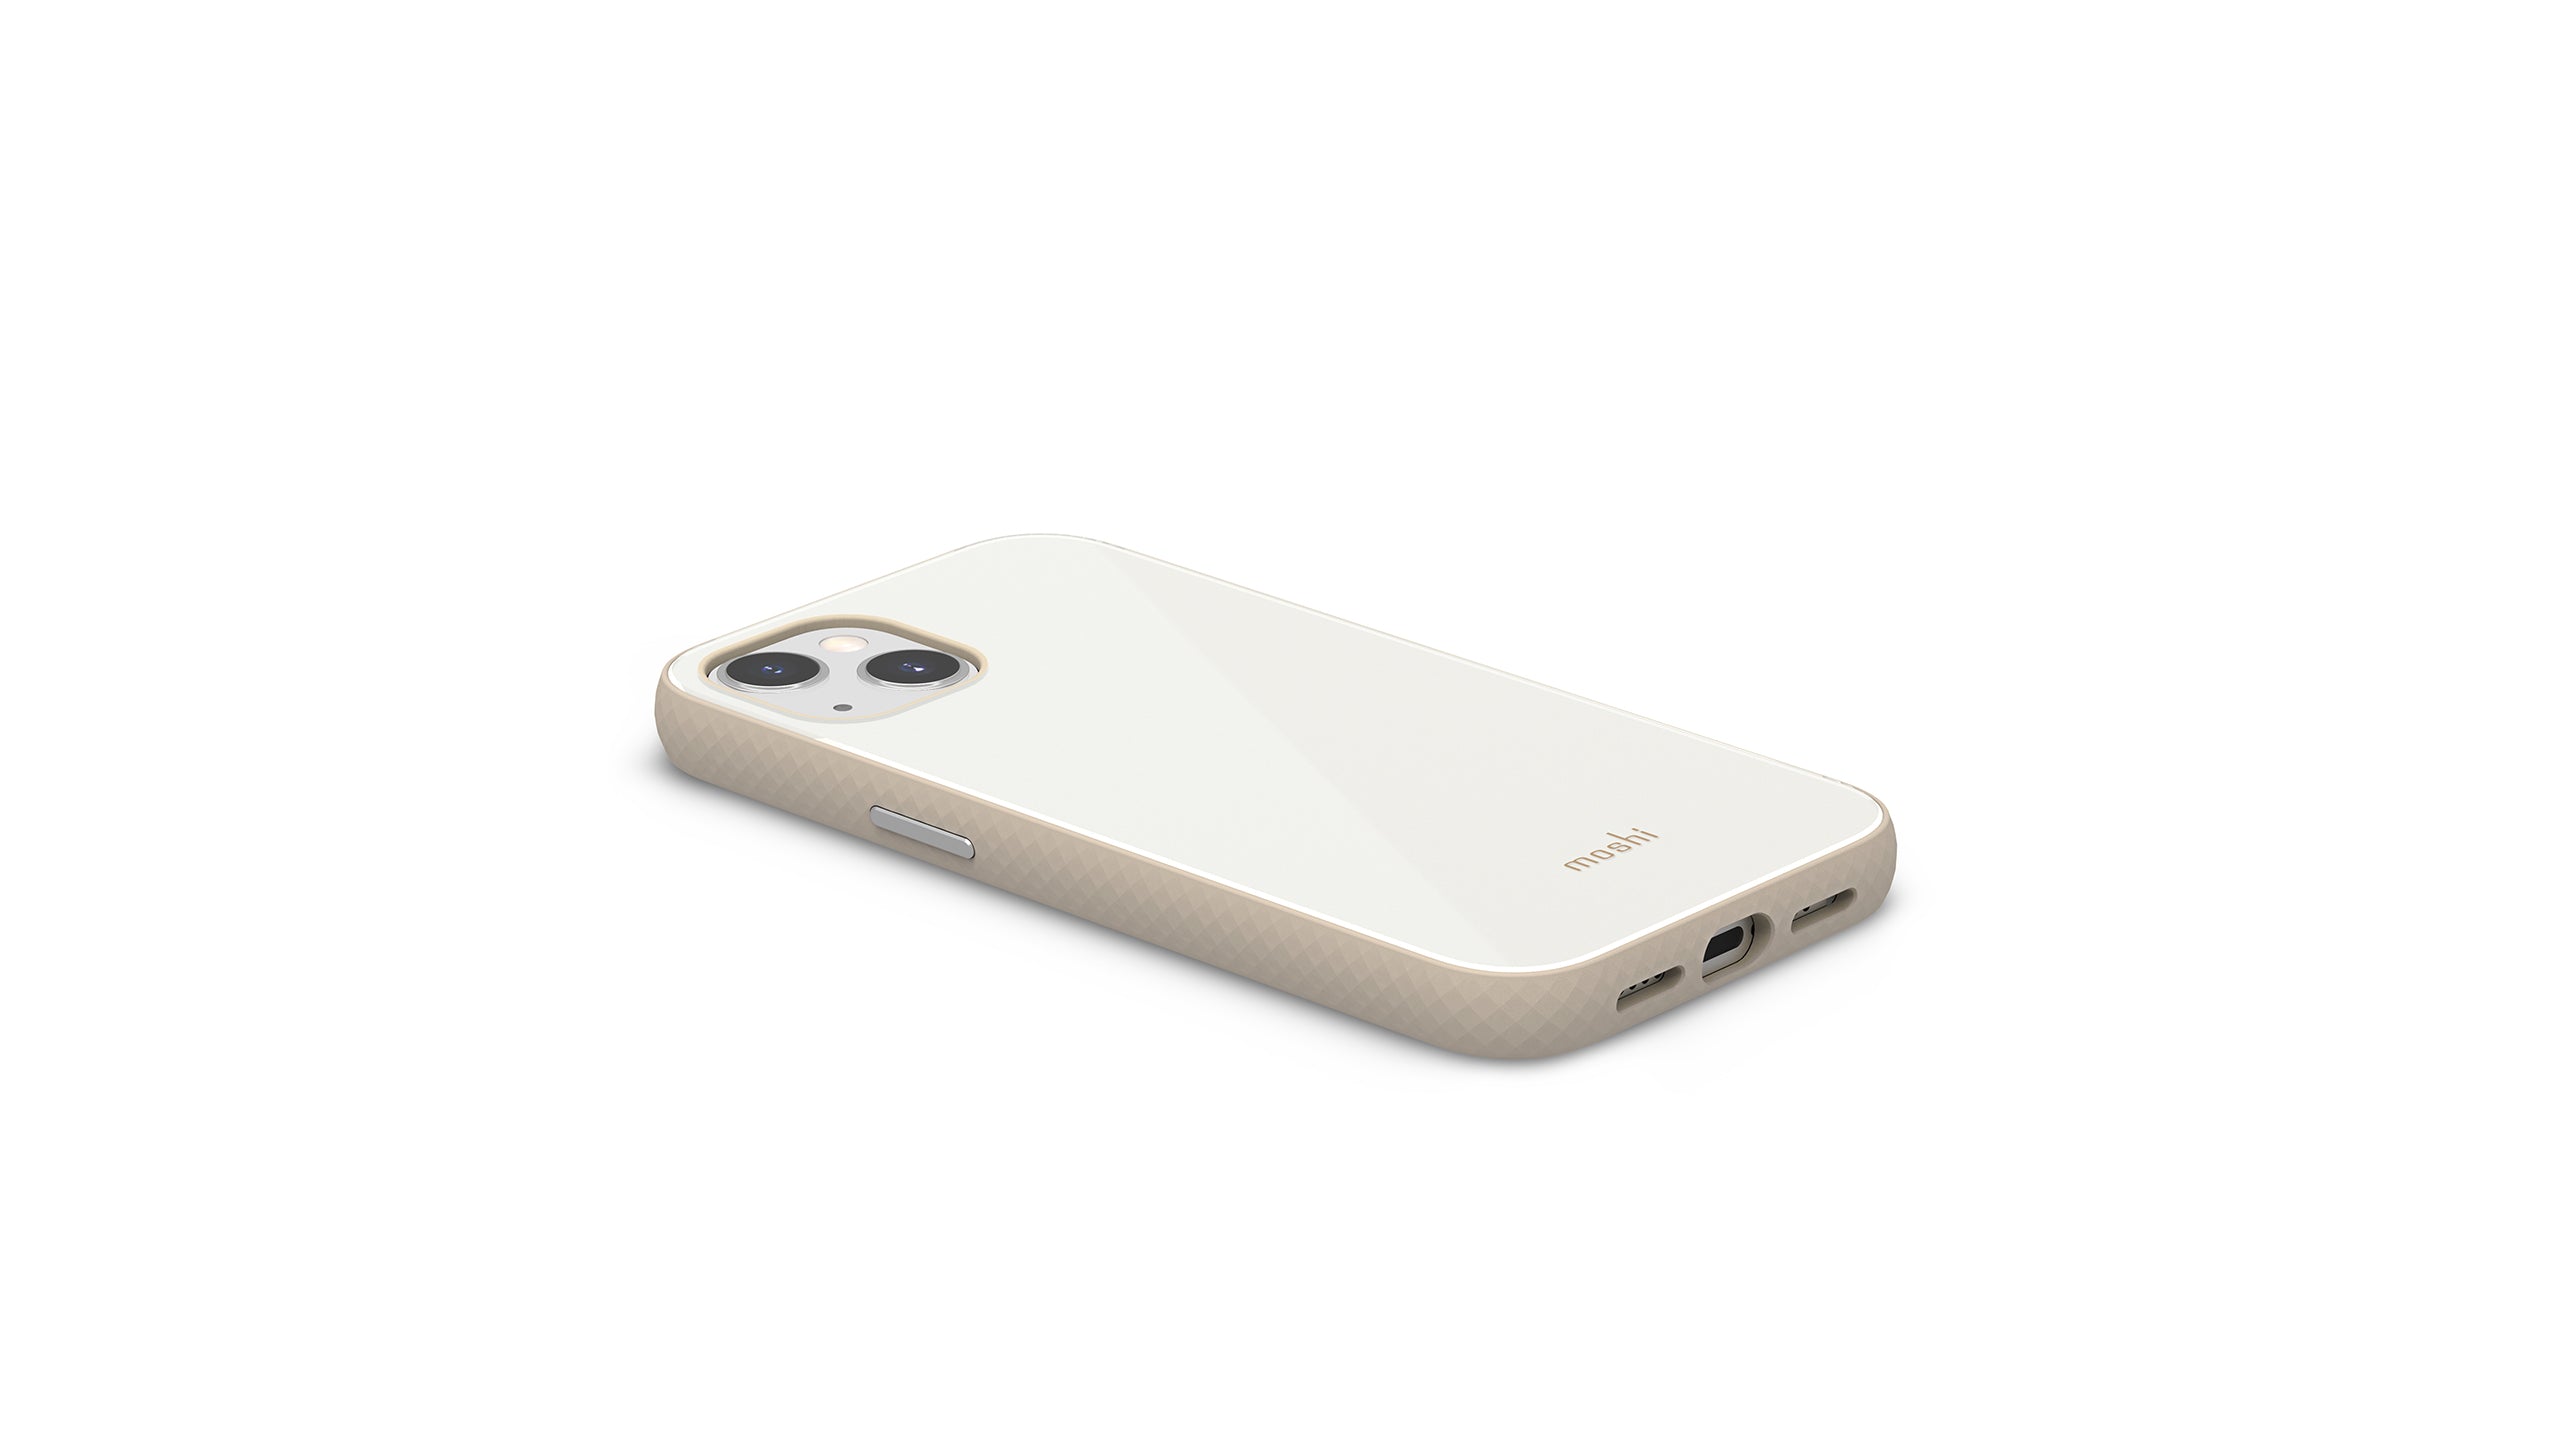 Moshi iGlaze Slim Hardshell Case for iPhone 13 Series